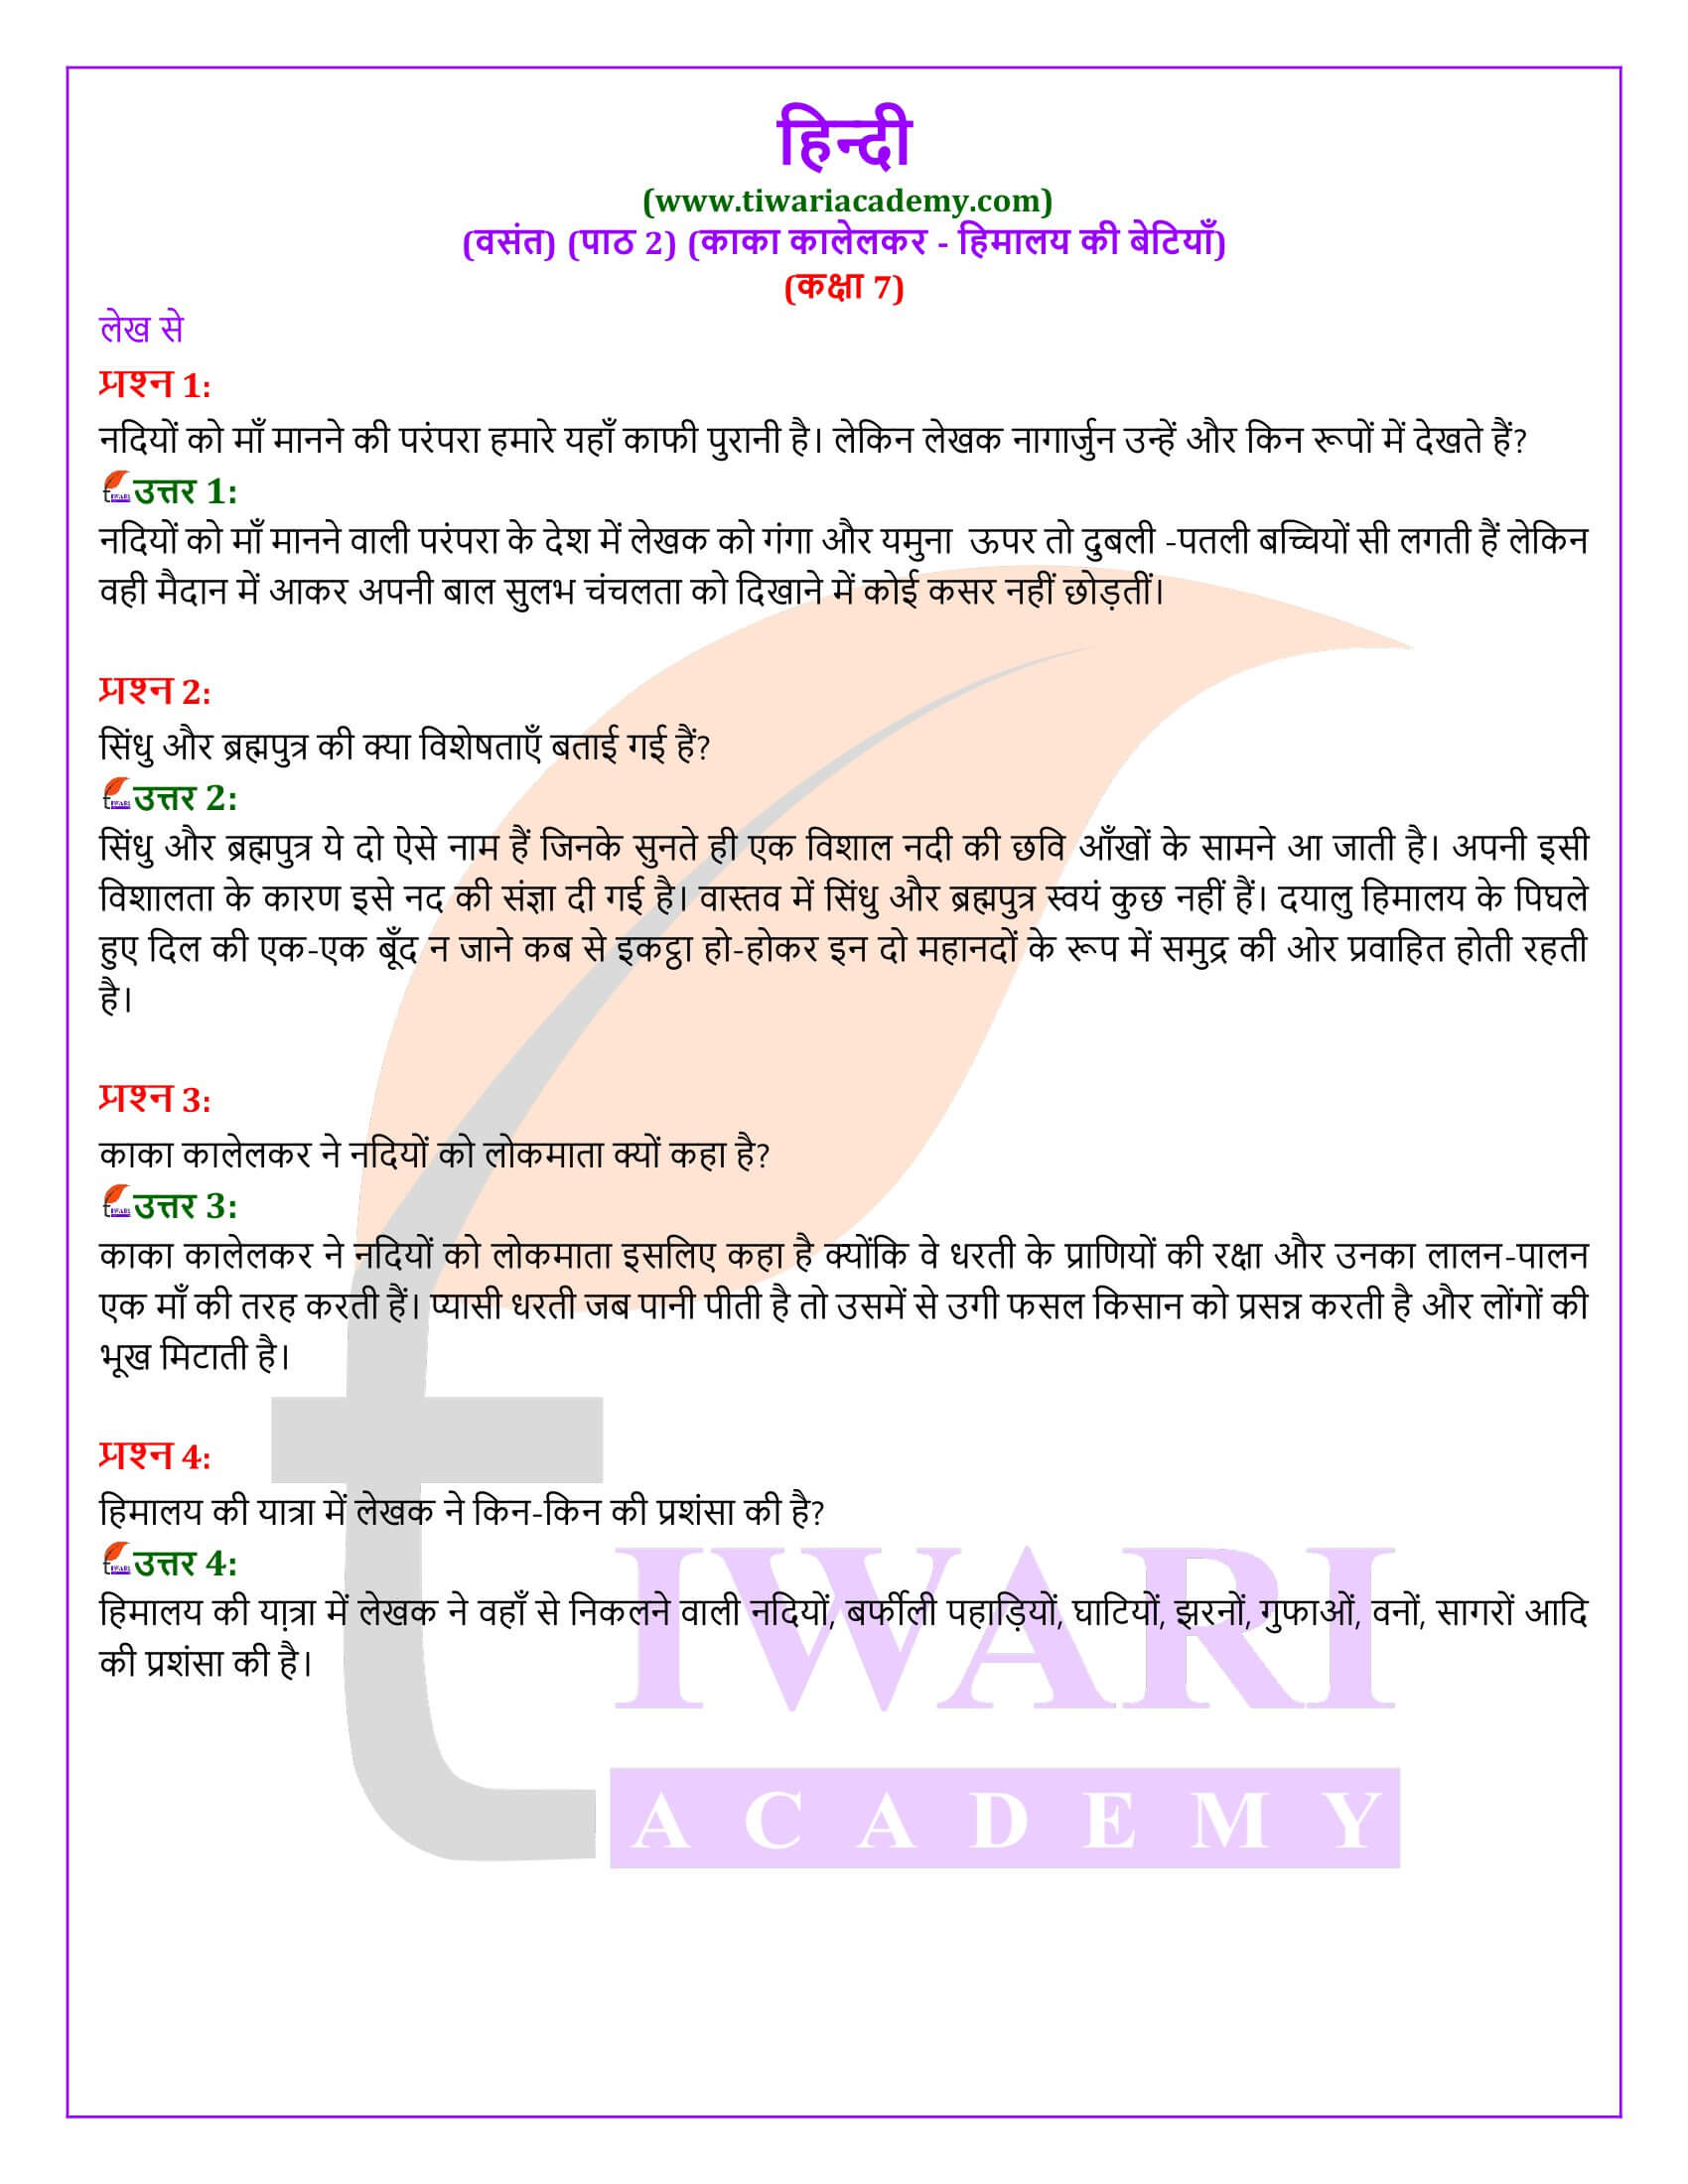 कक्षा 7 हिंदी वसंत अध्याय 2 हिमालय की बेटियाँ के प्रश्न उत्तर